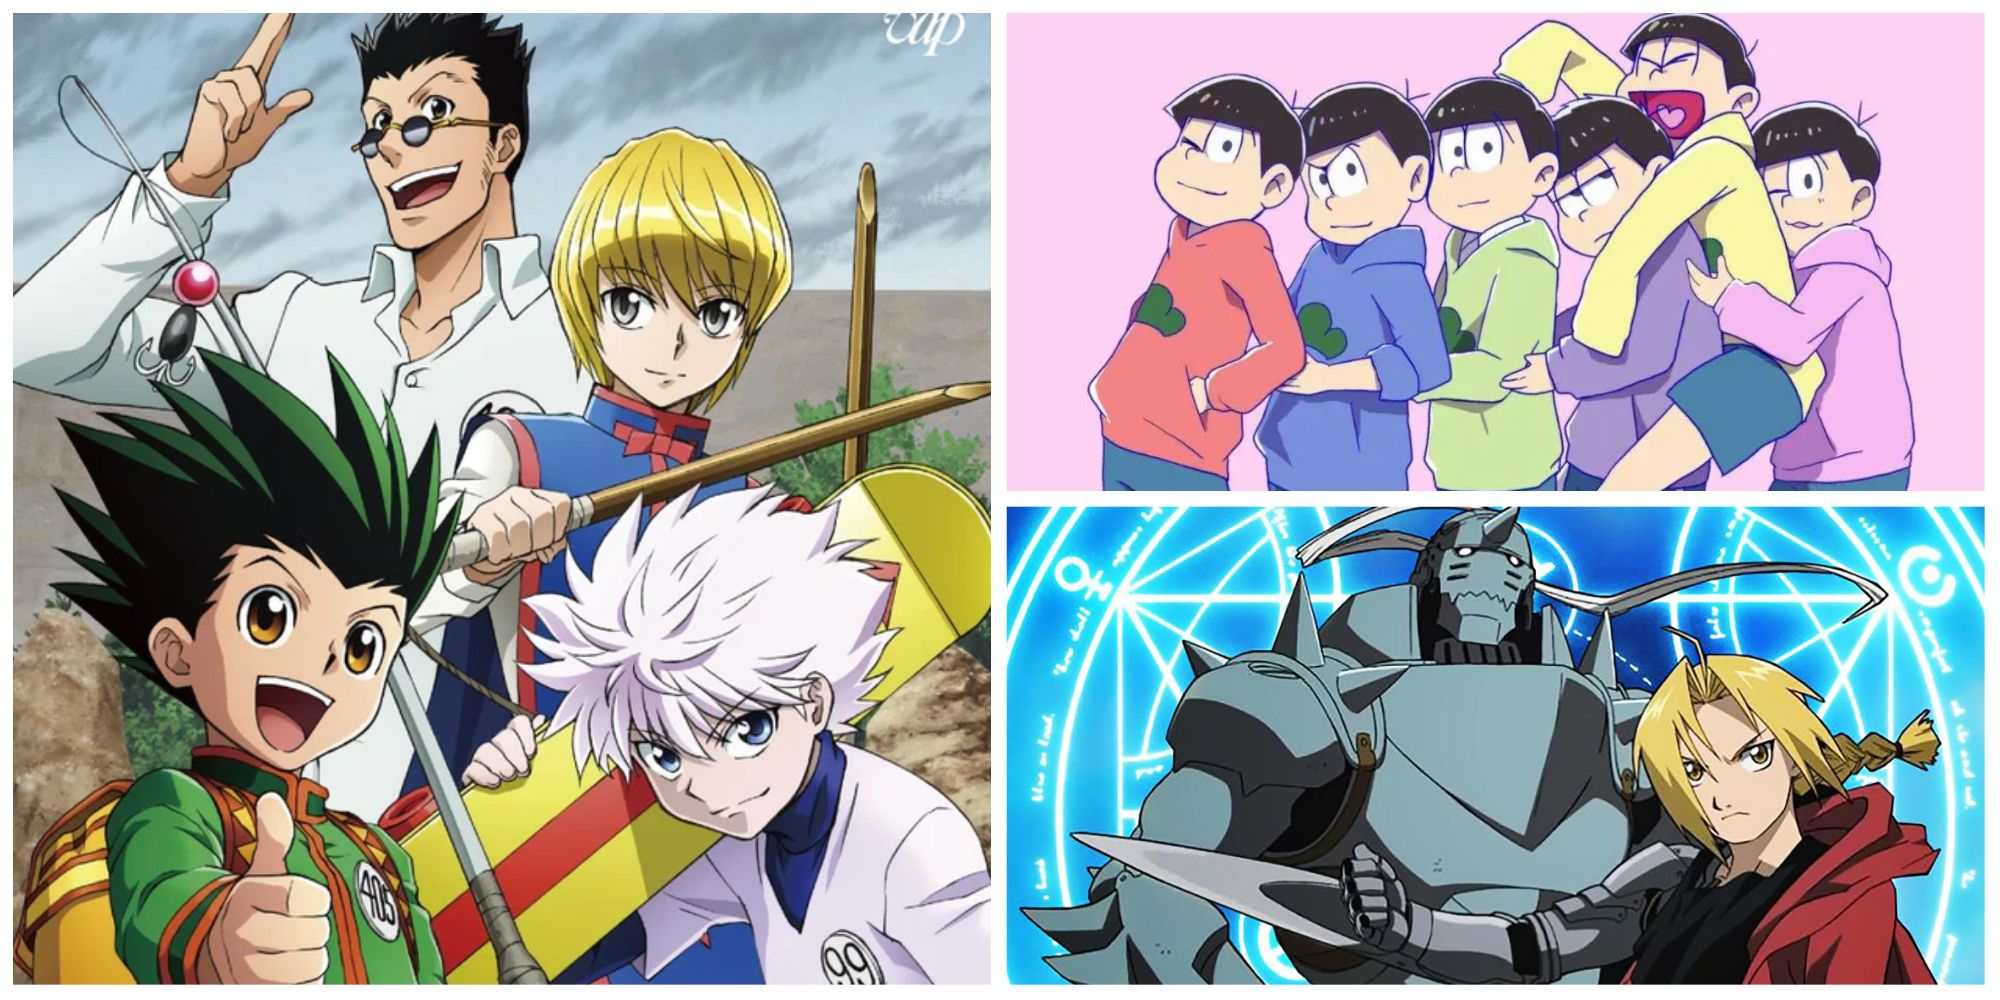 21 Melhores Animes Seinen (animes para adultos) - Aficionados